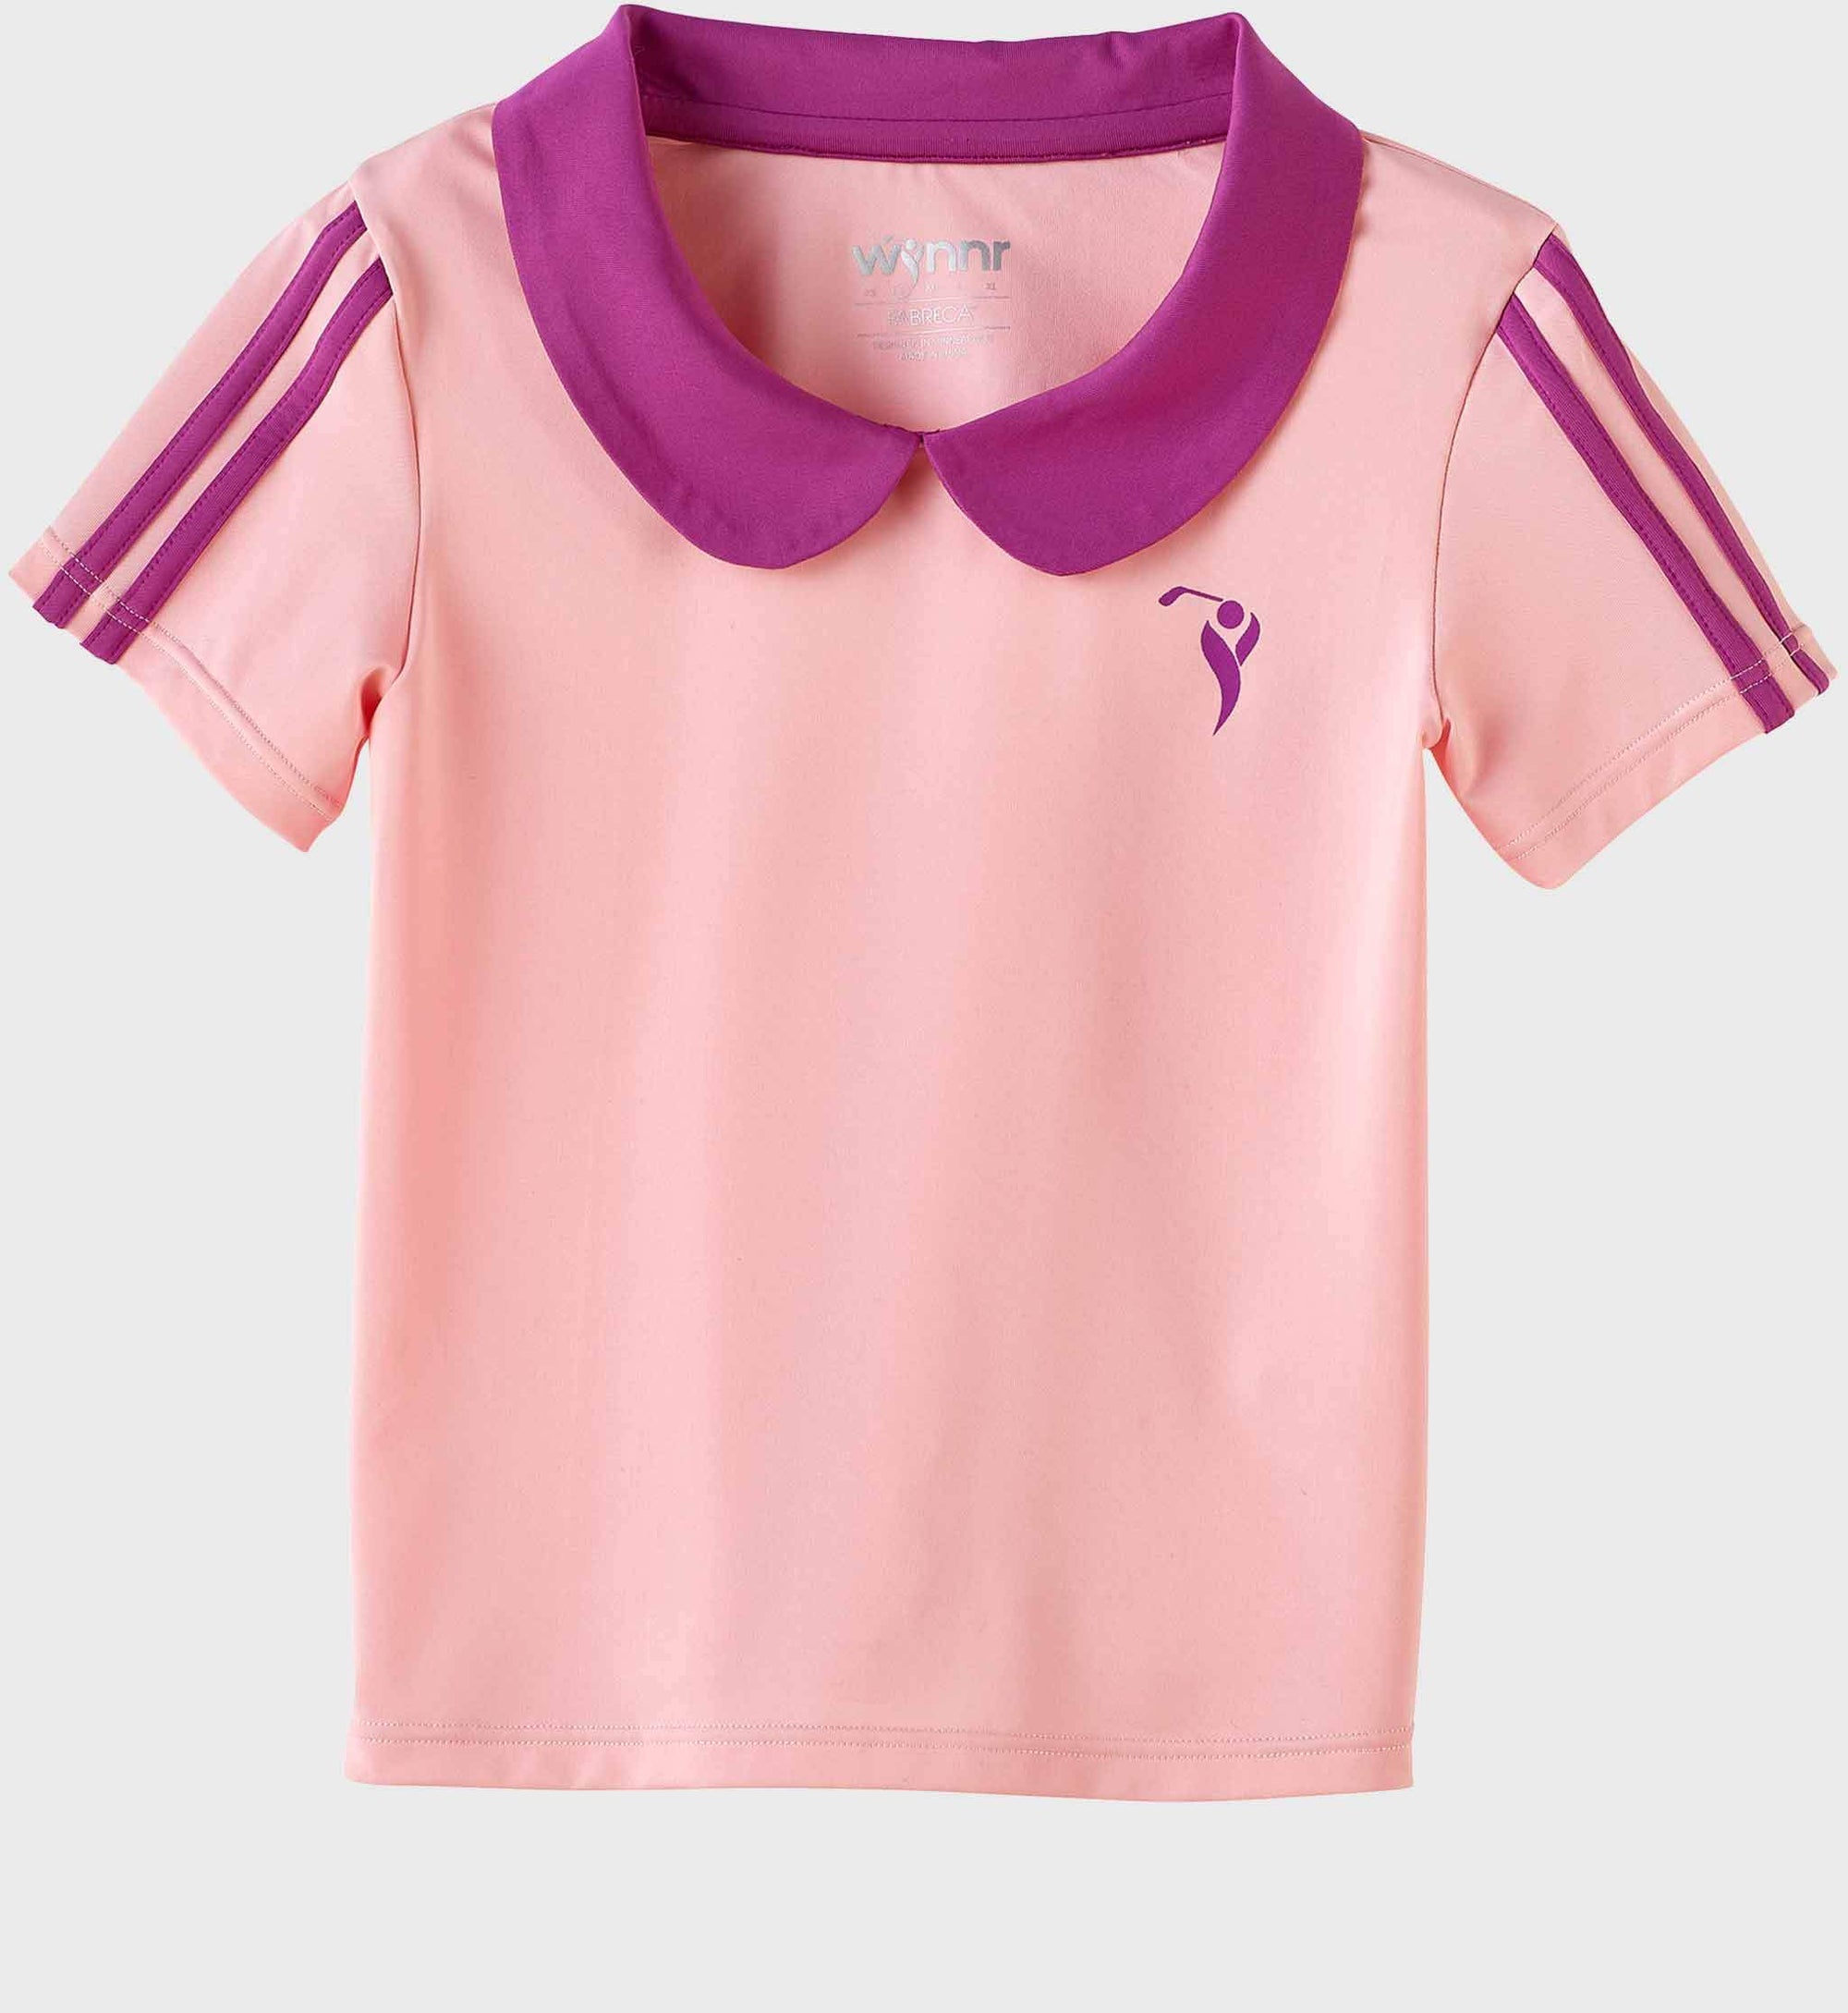 ladies pink golf shirt